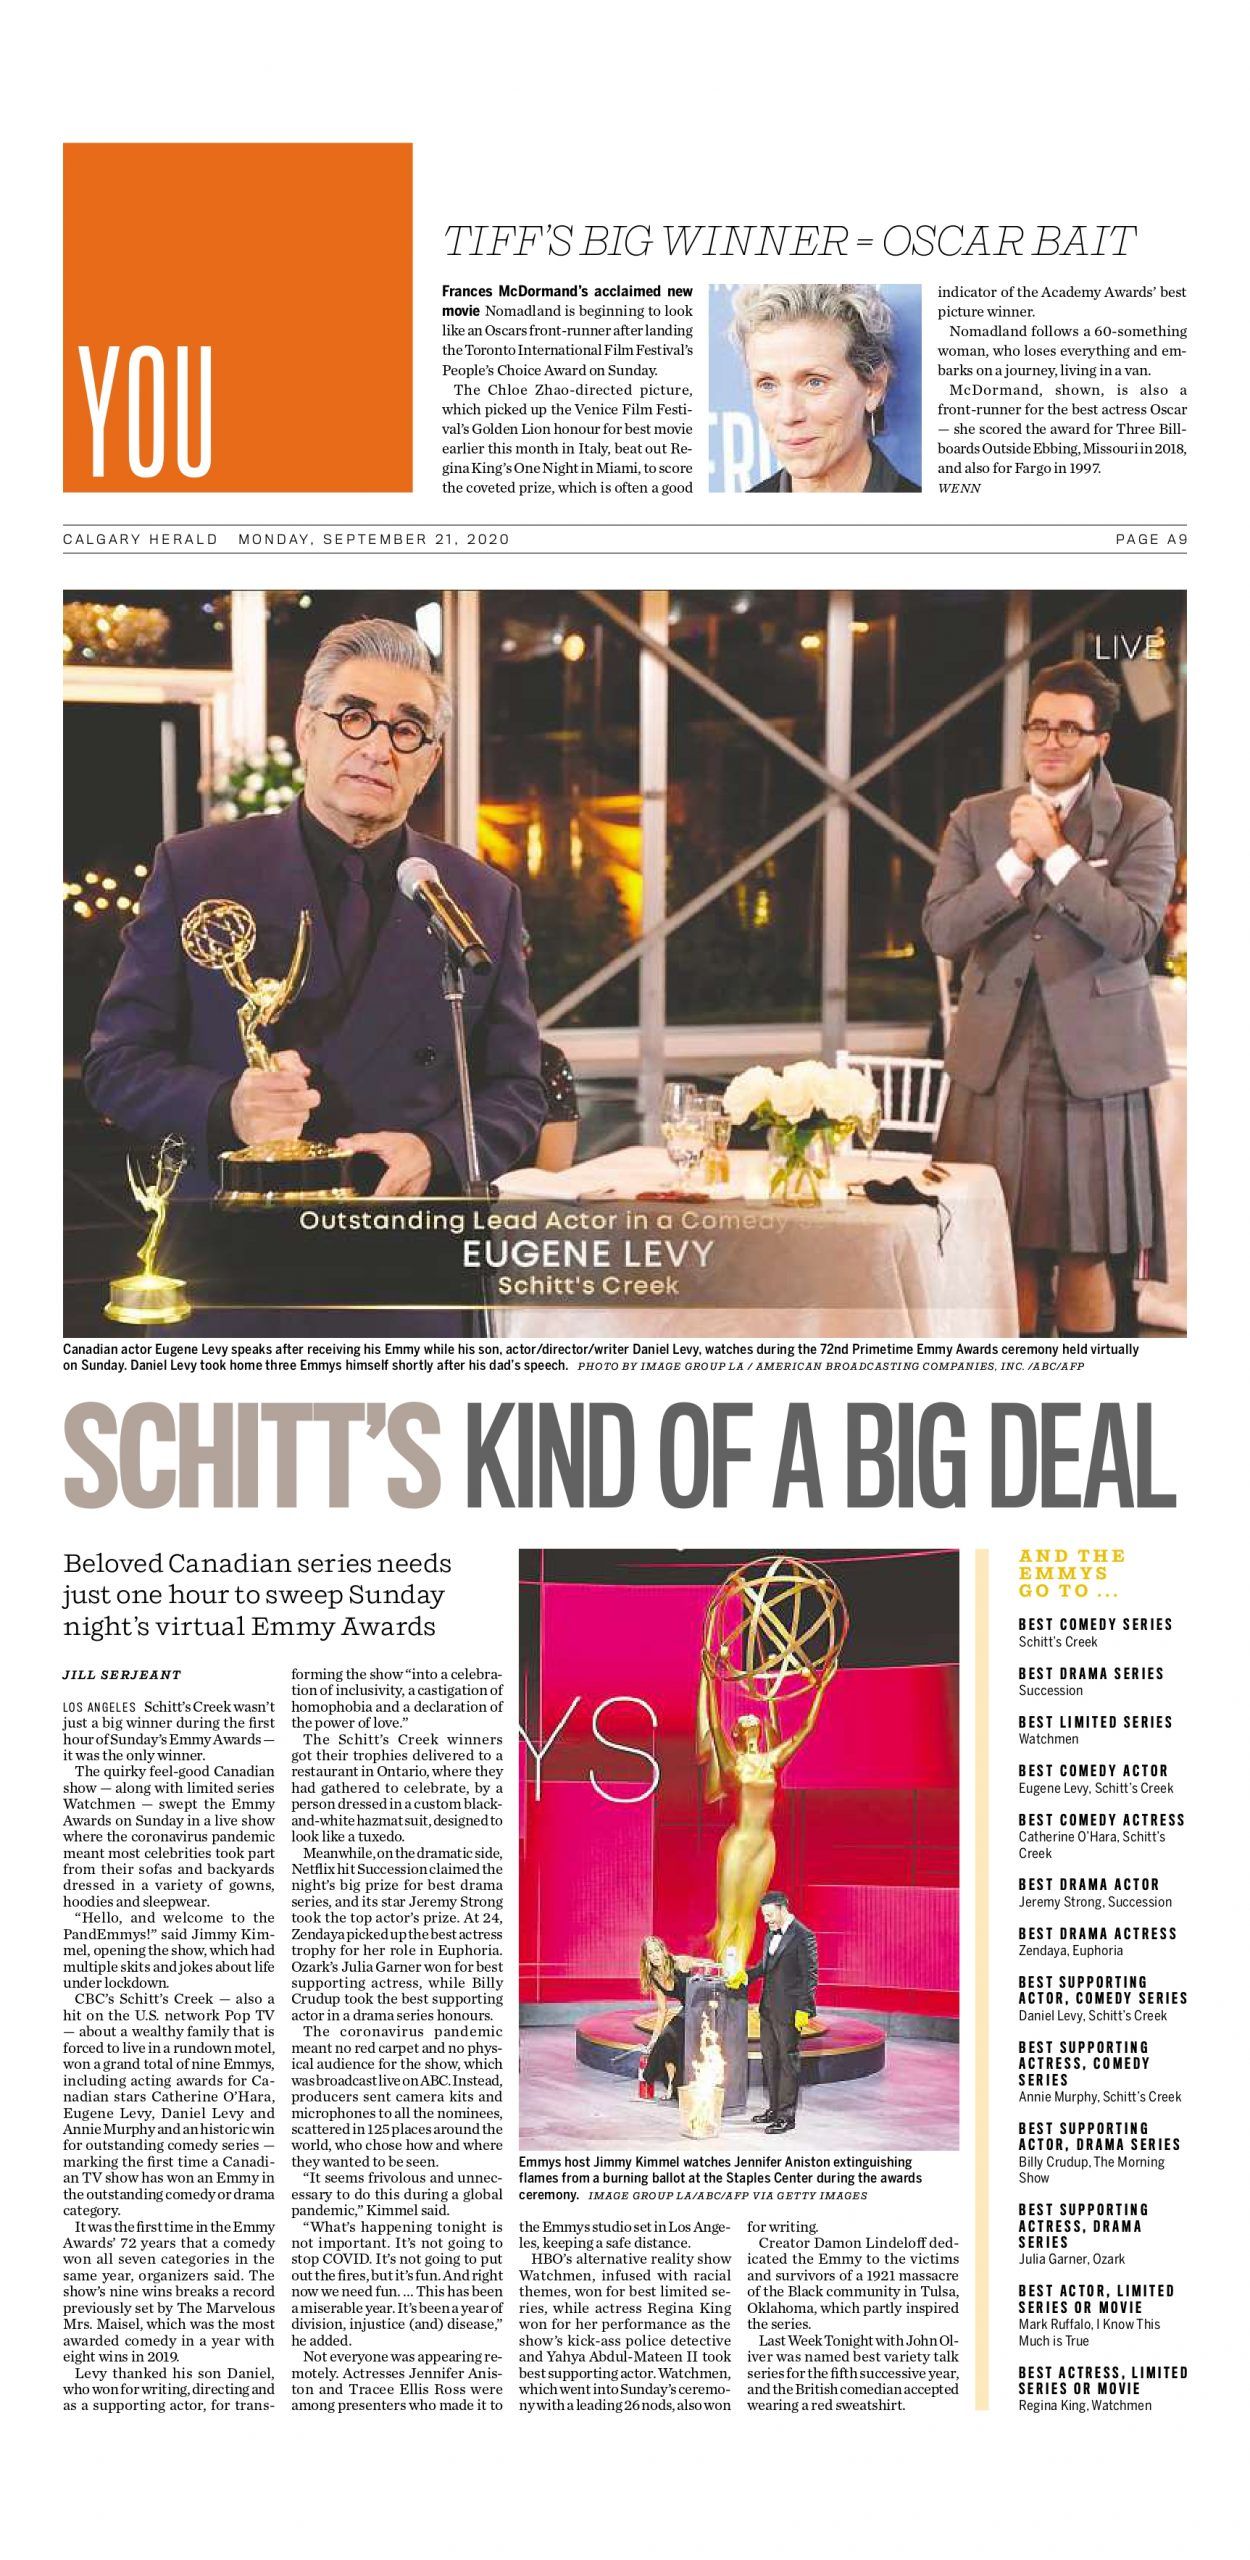 Emmys: Schitt's Creek's Annie Murphy Wins Best Supporting Comedy Actress